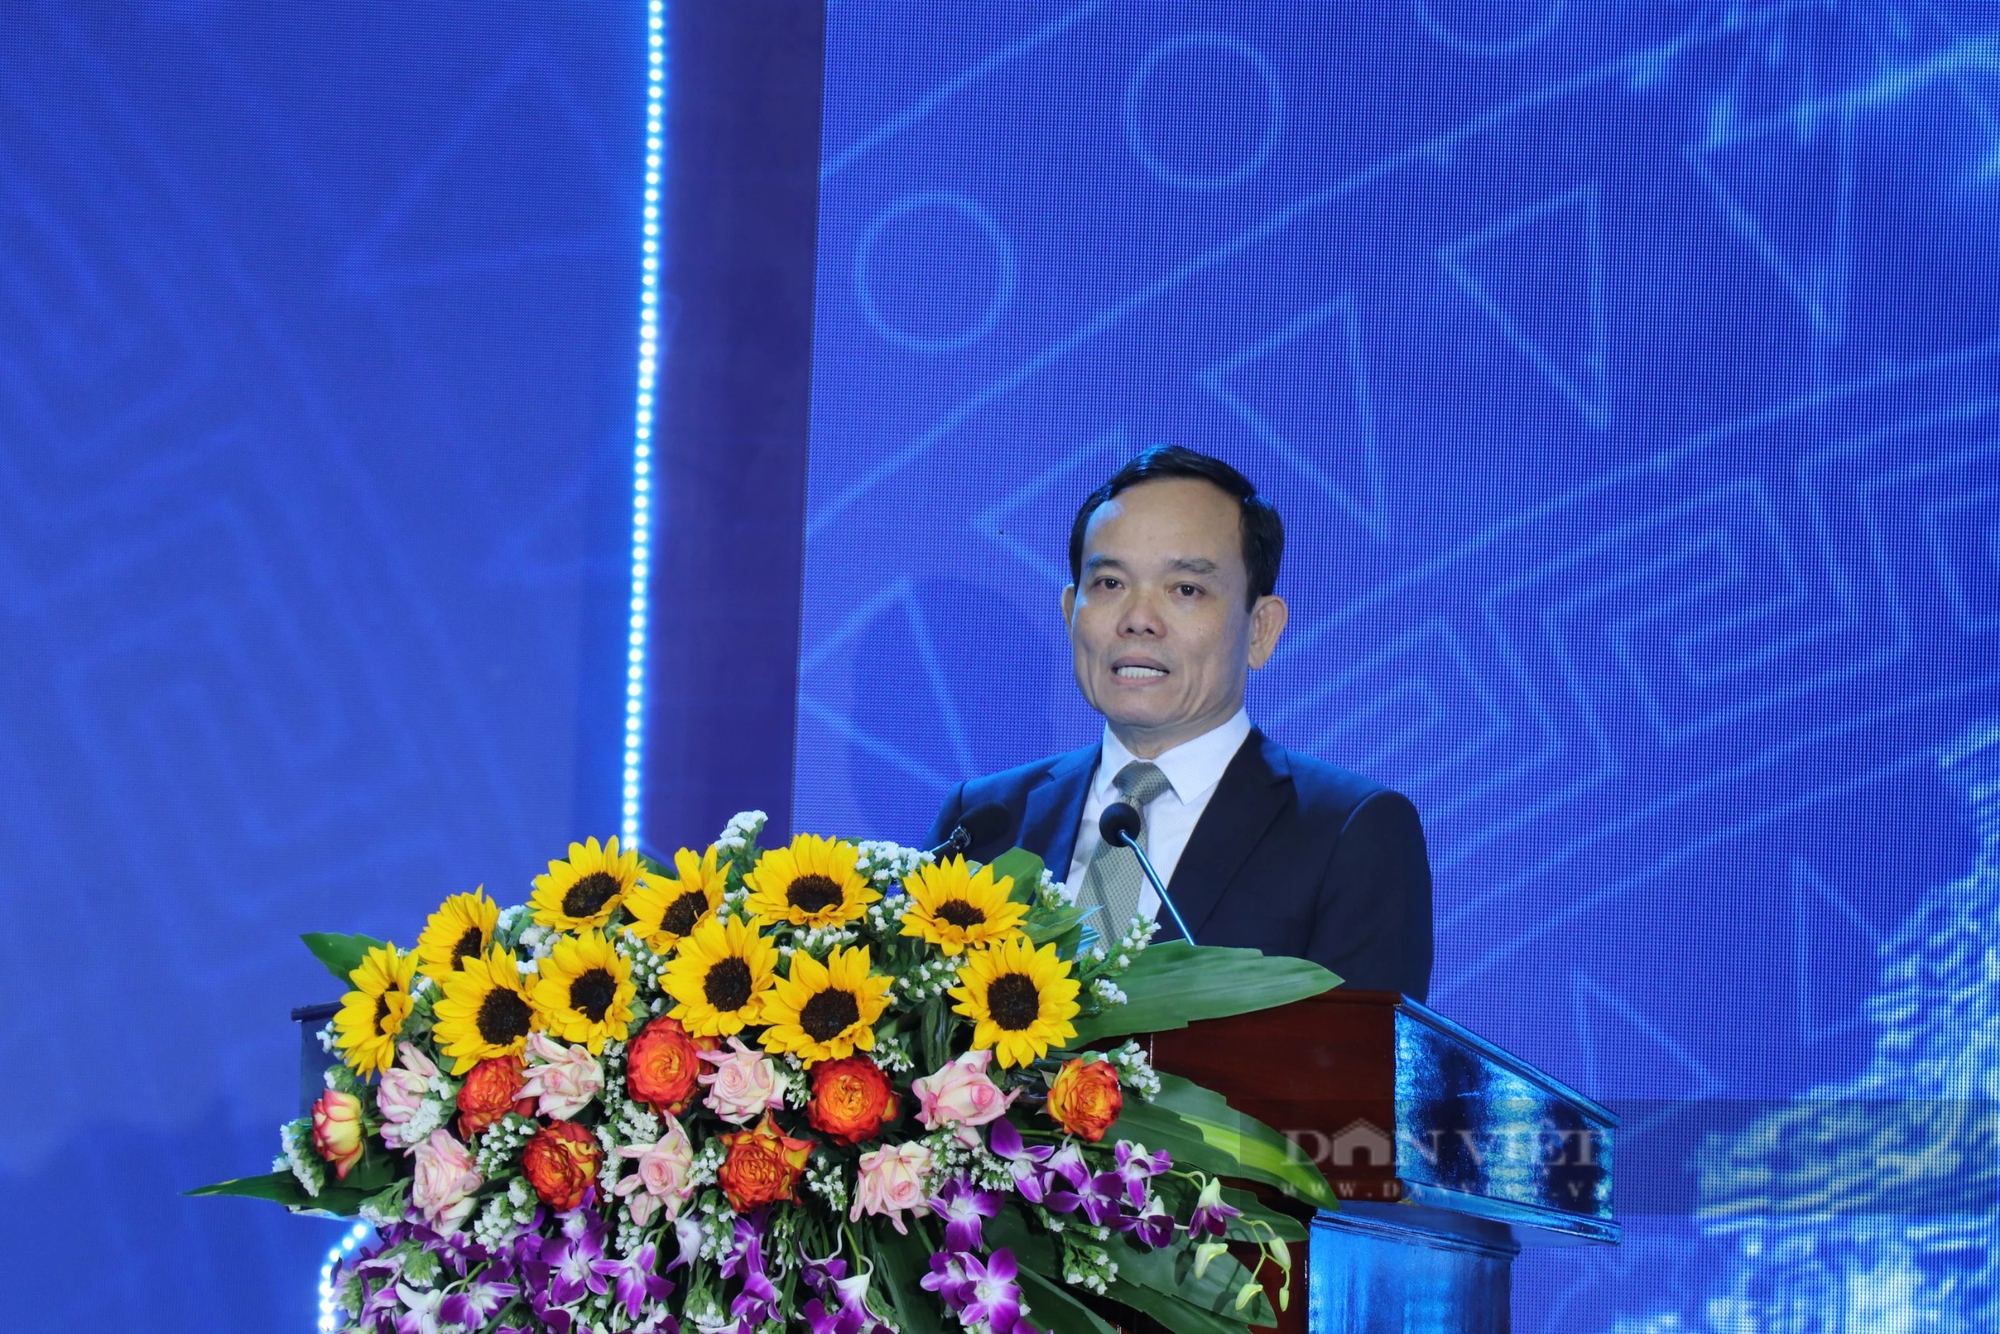 Phó Thủ tướng Trần Lưu Quang: Quy hoạch Quảng Nam cần thực hiện 8 chữ “tuân thủ, linh hoạt, đồng bộ, thấu hiểu” - Ảnh 1.